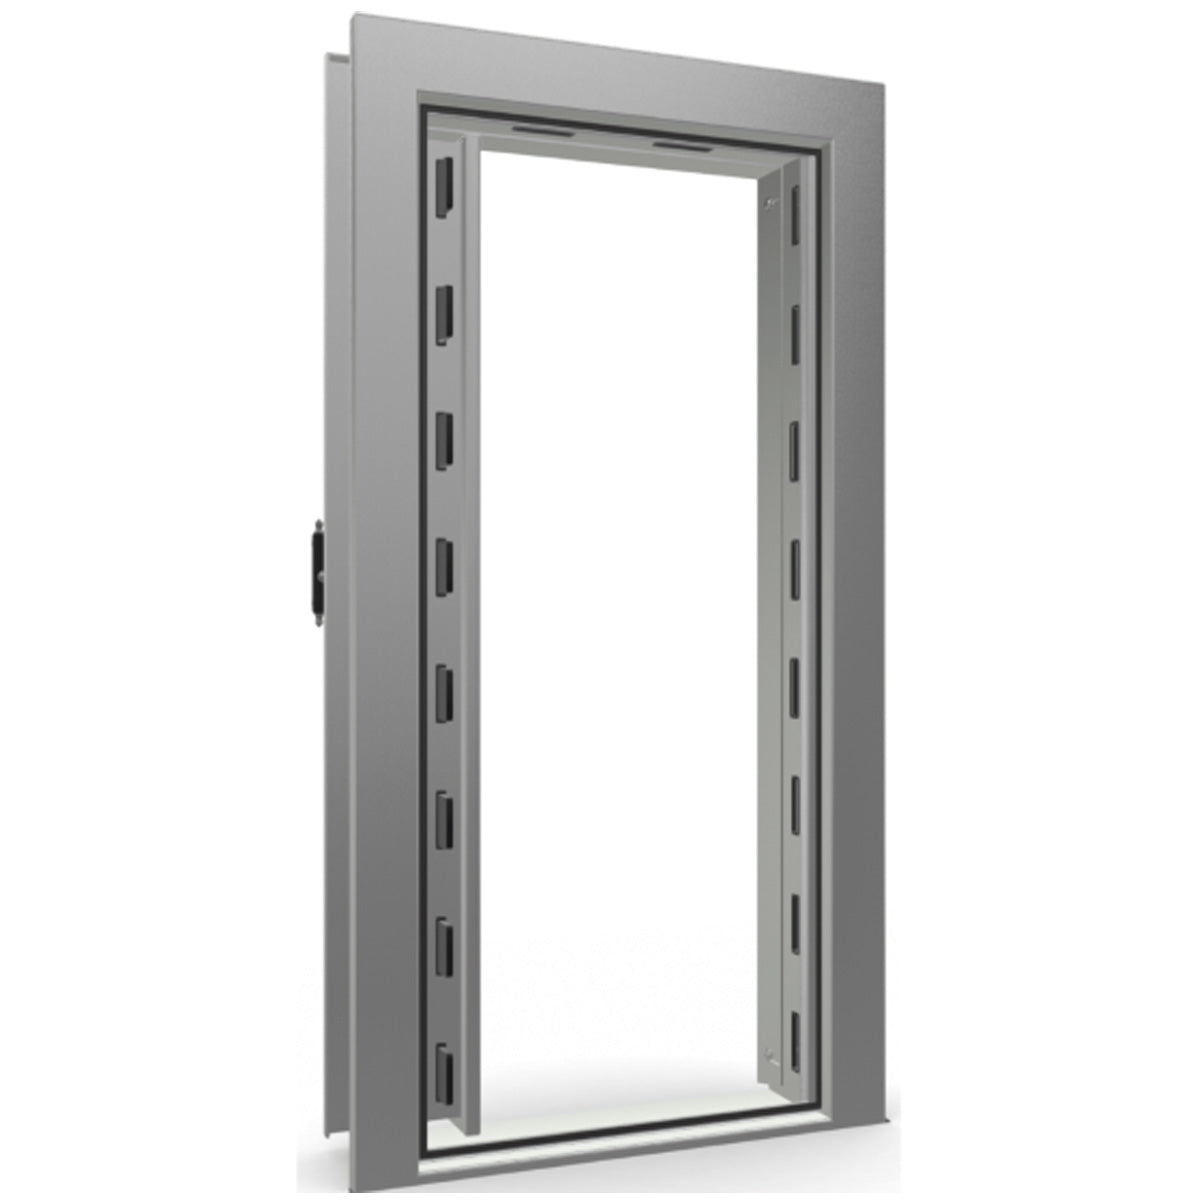 The Beast Vault Door in Gray Gloss with Black Chrome Electronic Lock, Left Inswing, door open.